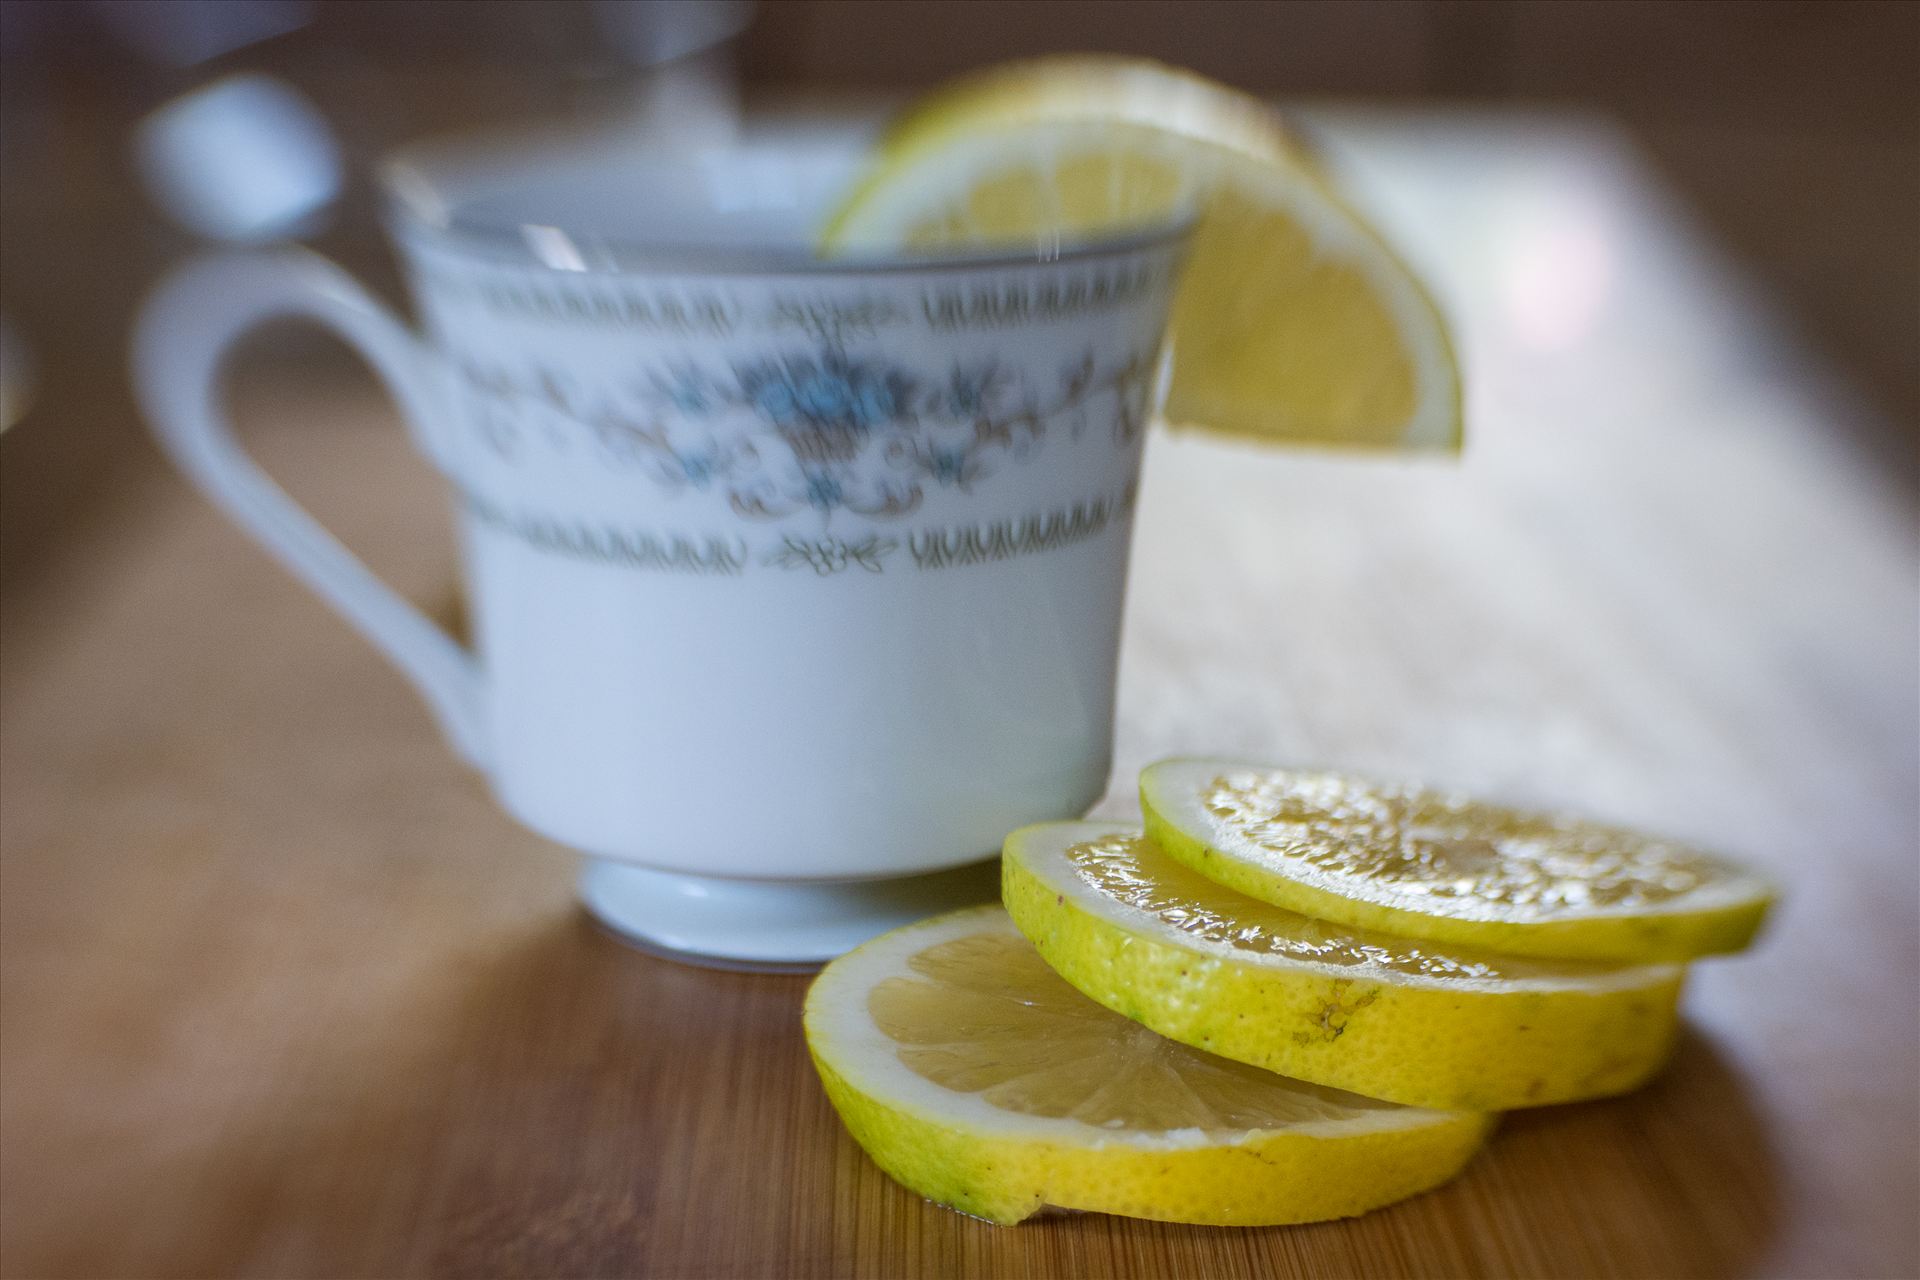 Tea With Lemon.jpg - Morning tea with fresh sliced lemon by Sarah Williams